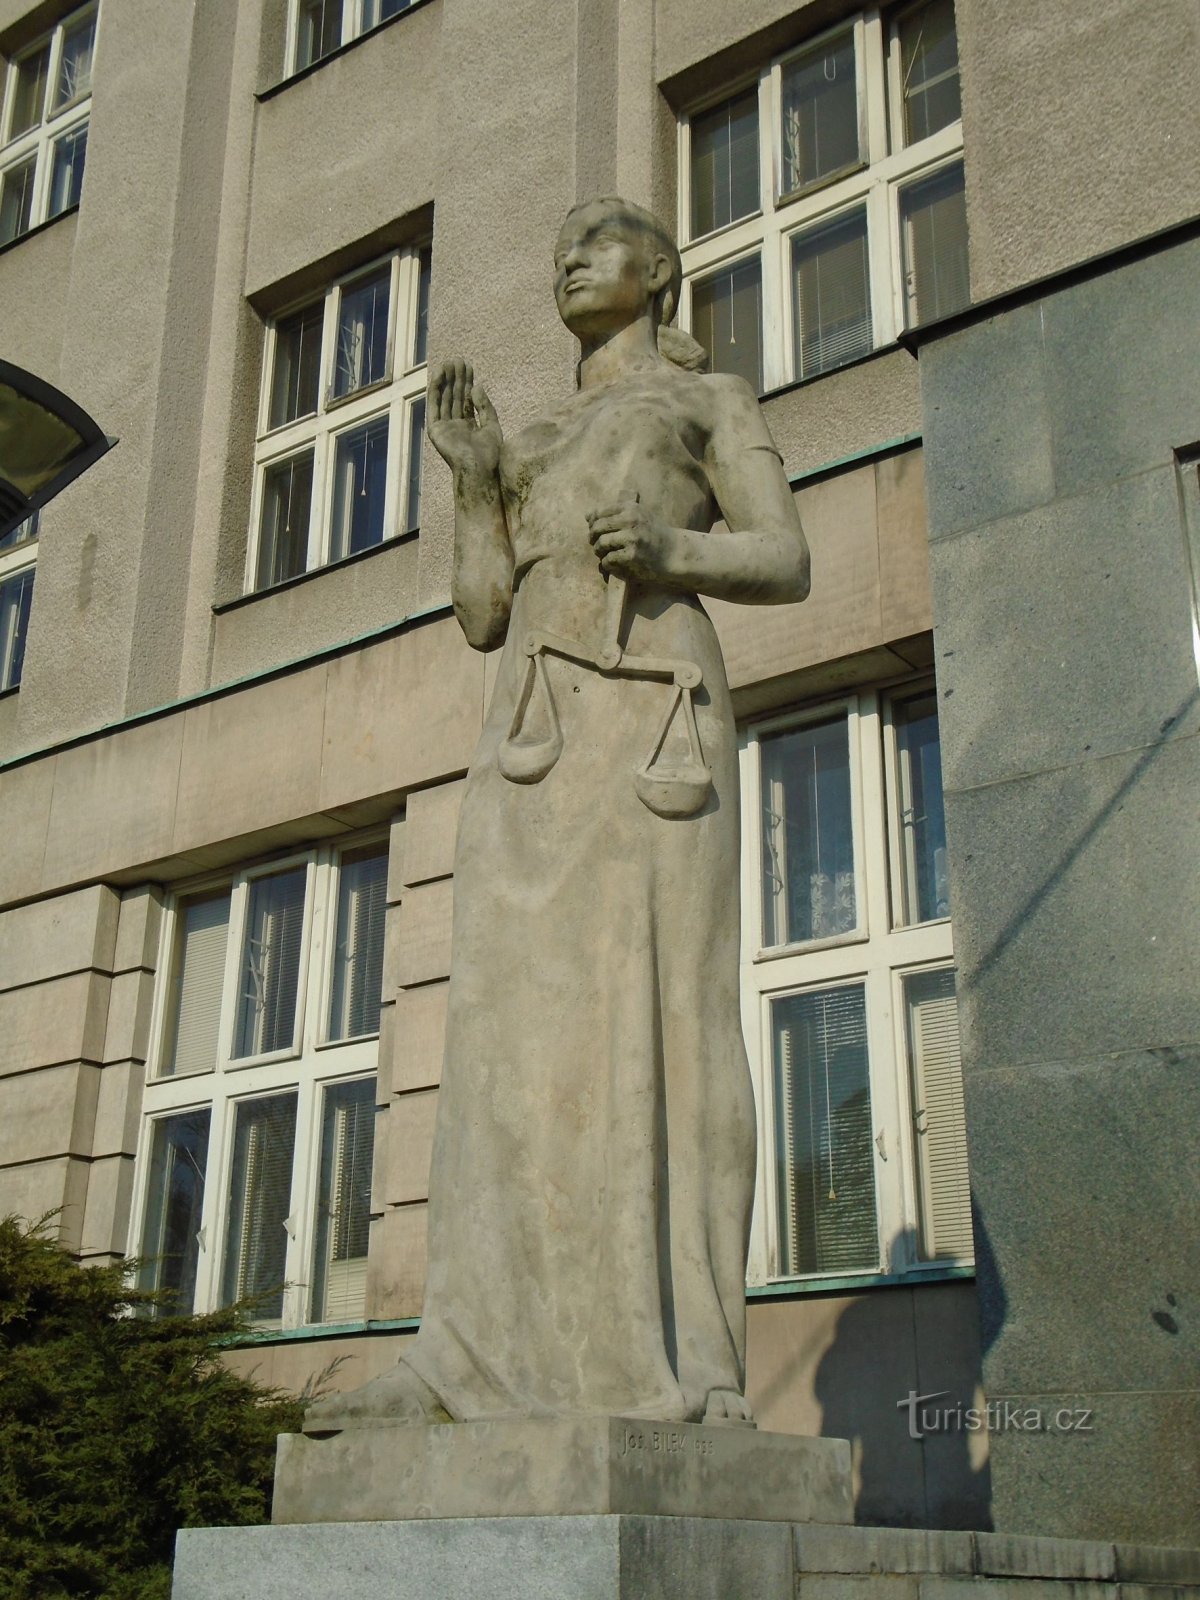 Άγαλμα της Δικαιοσύνης στην είσοδο του περιφερειακού δικαστηρίου (Hradec Králové, 1.4.2018 Απριλίου XNUMX)